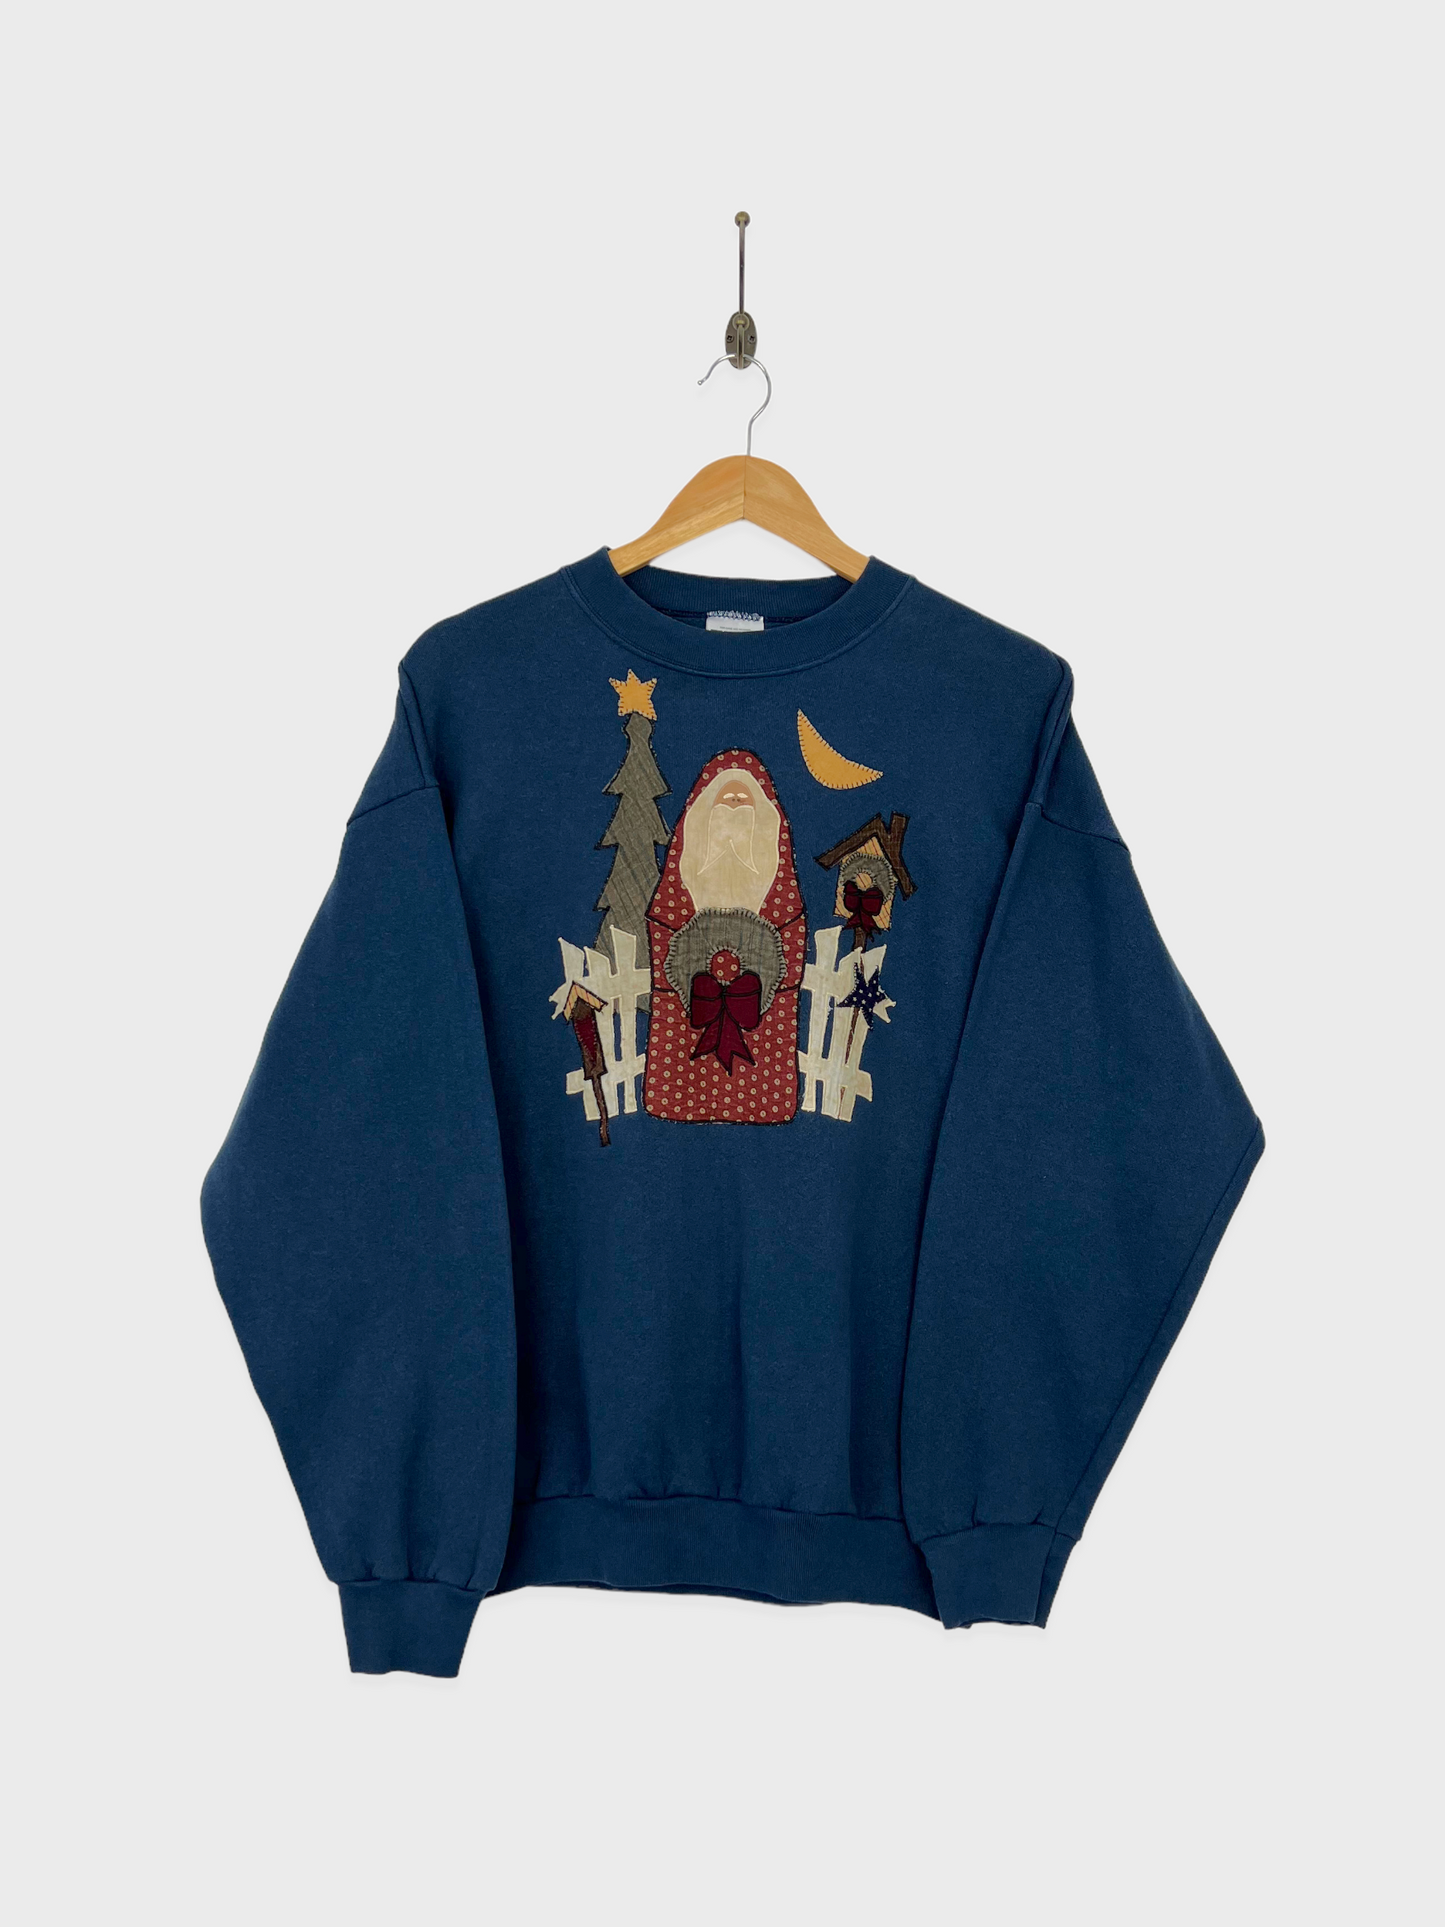 90's Christmas USA Made Embroidered Vintage Sweatshirt Size 10